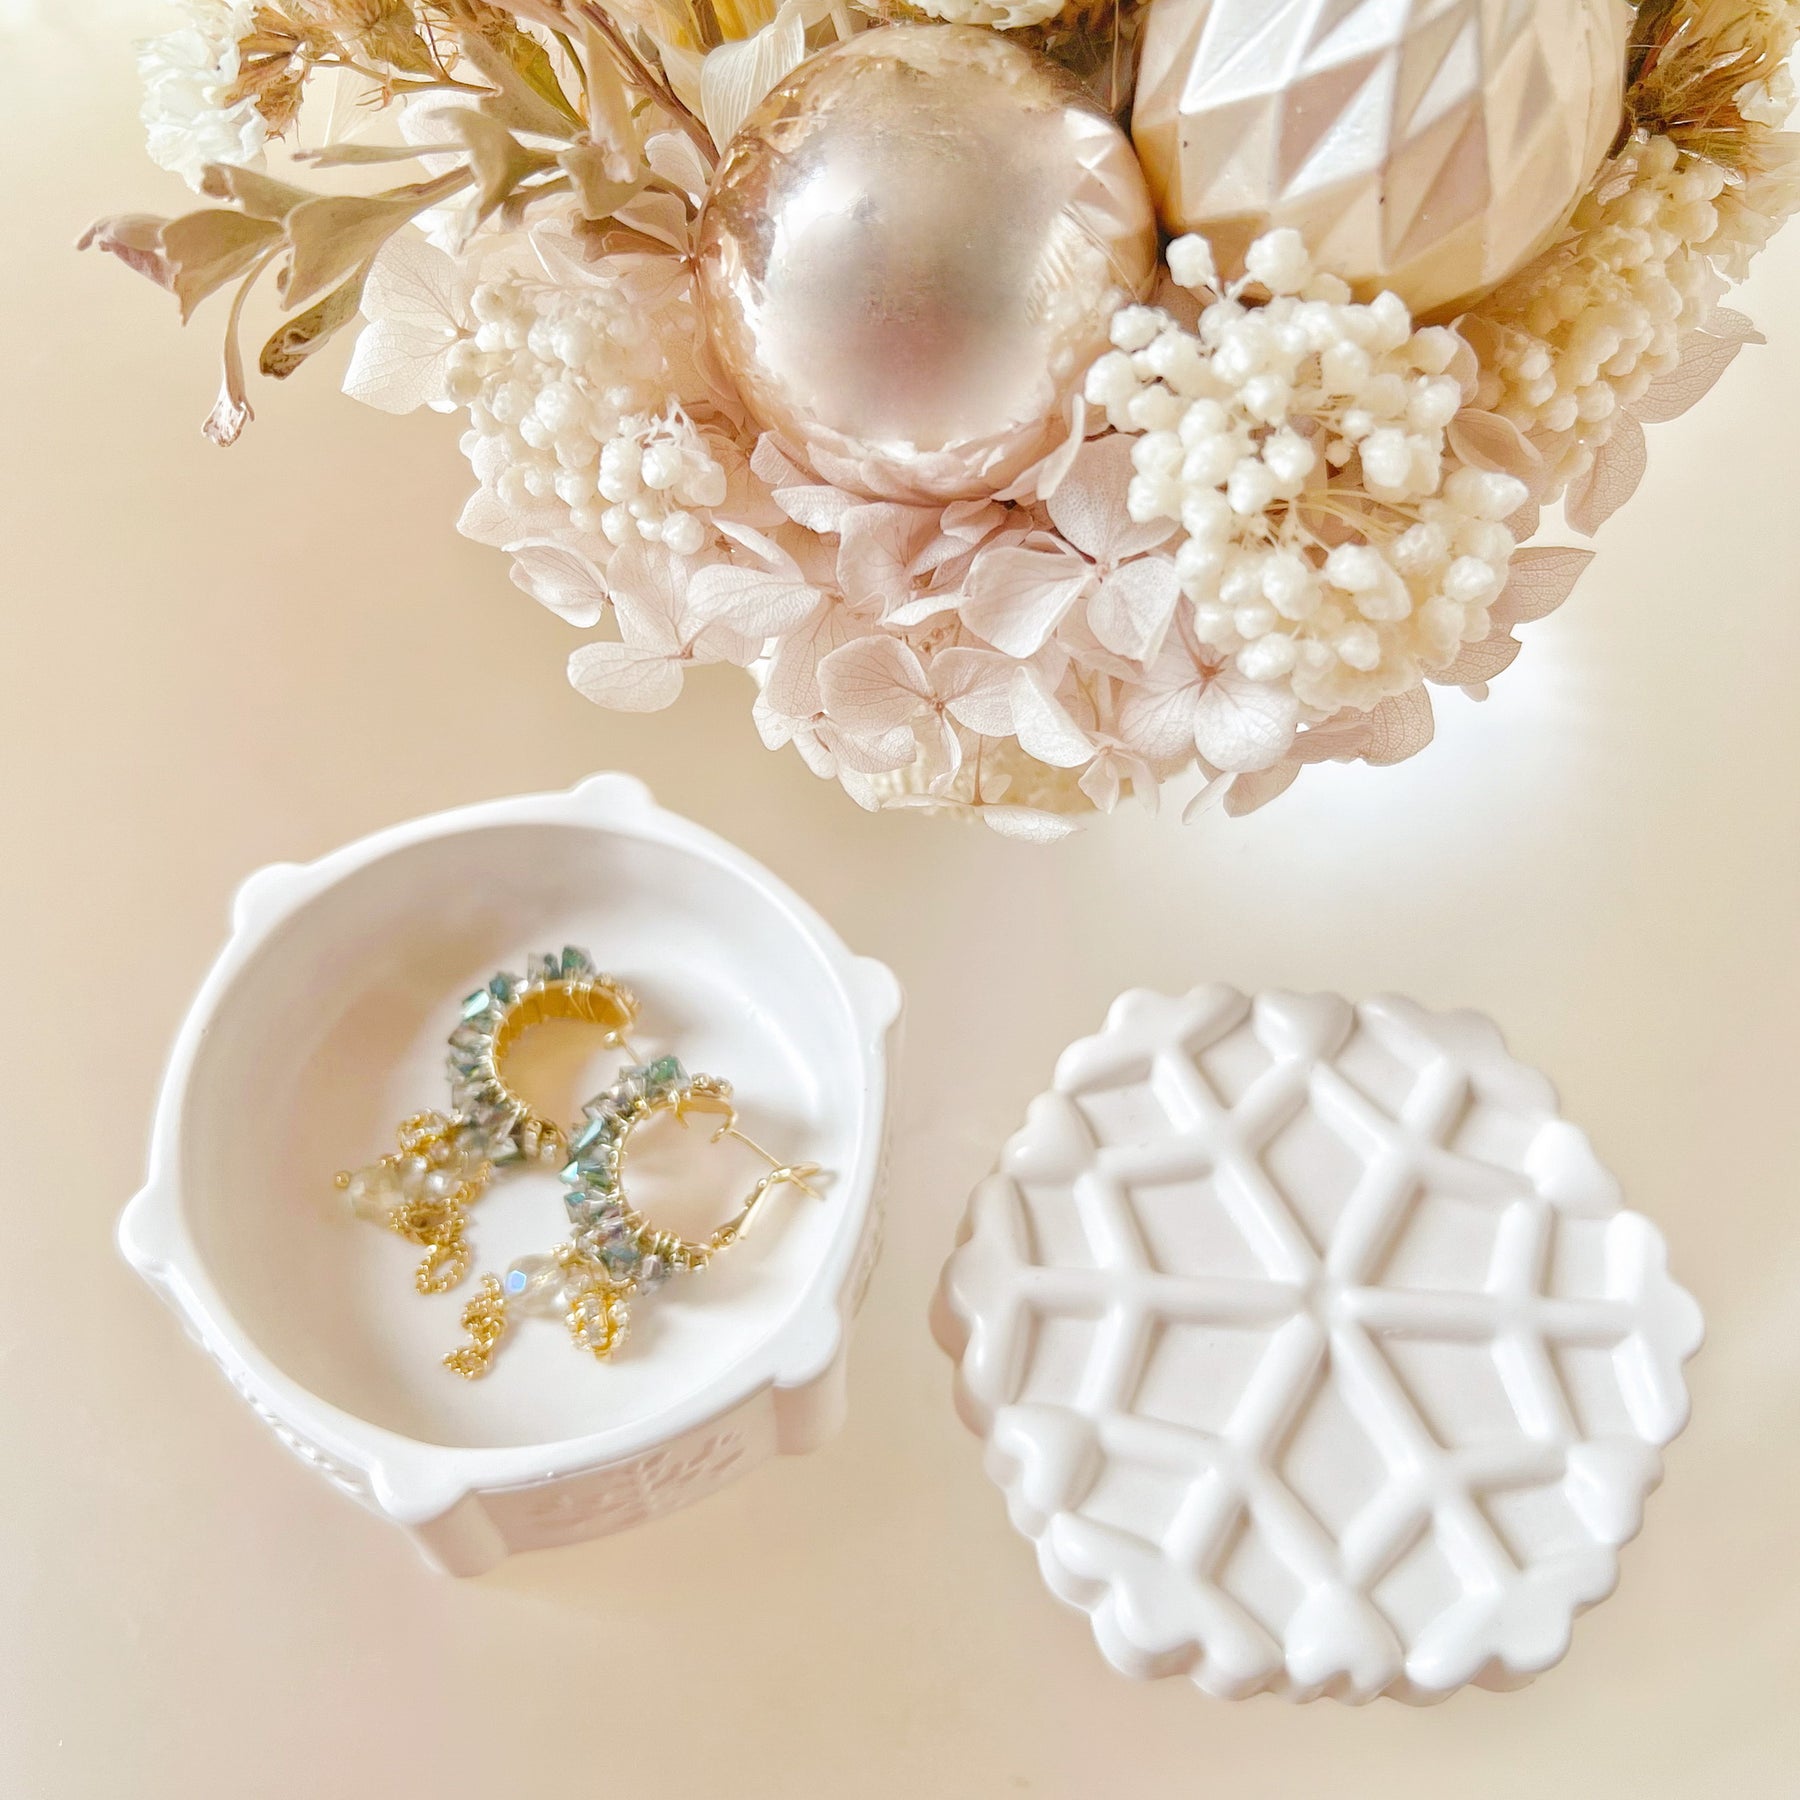 Handmade Snowflake Trinket Box - Unique Christmas Gift - LMJ Candles